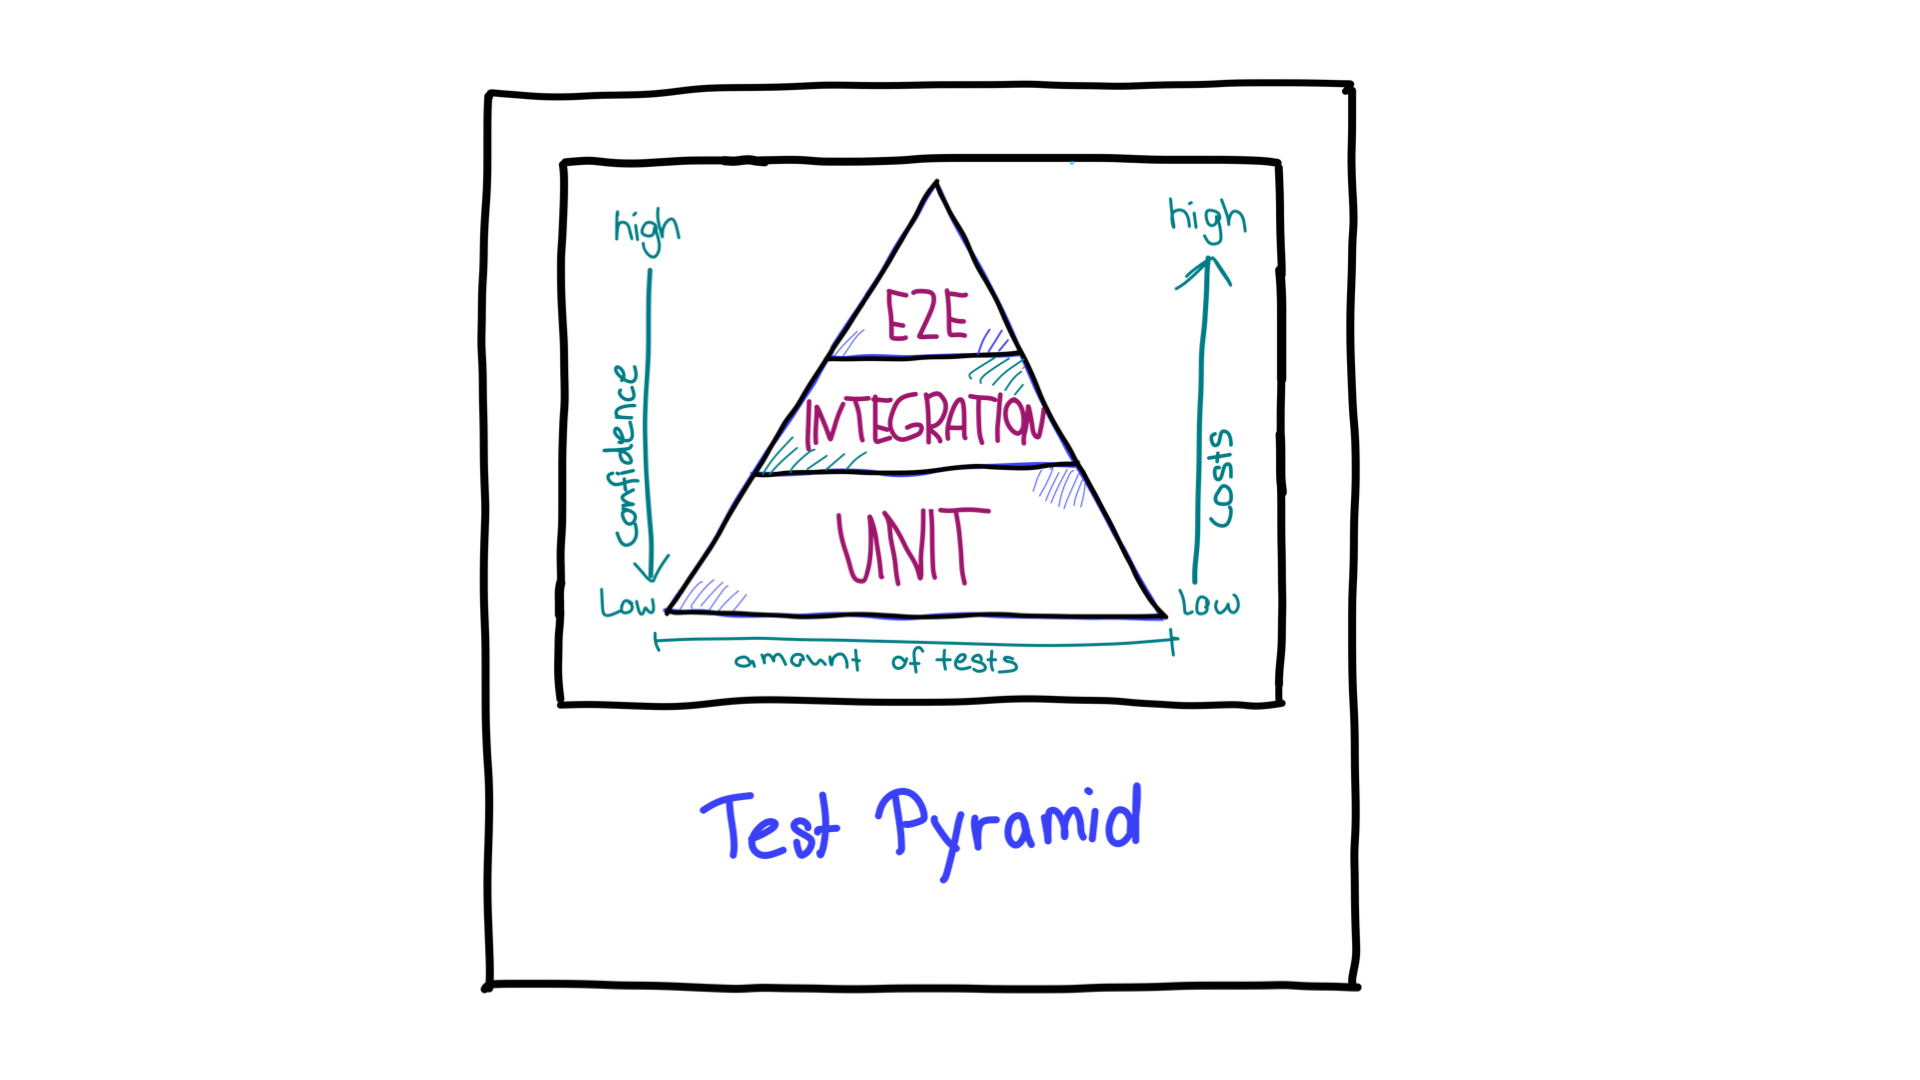 टेस्ट पिरामिड, जिसमें तीर के निशान हैं और अलग-अलग तरह के टेस्ट के लिए ज़रूरी संसाधनों और भरोसे की दिशा दिखाई गई है.